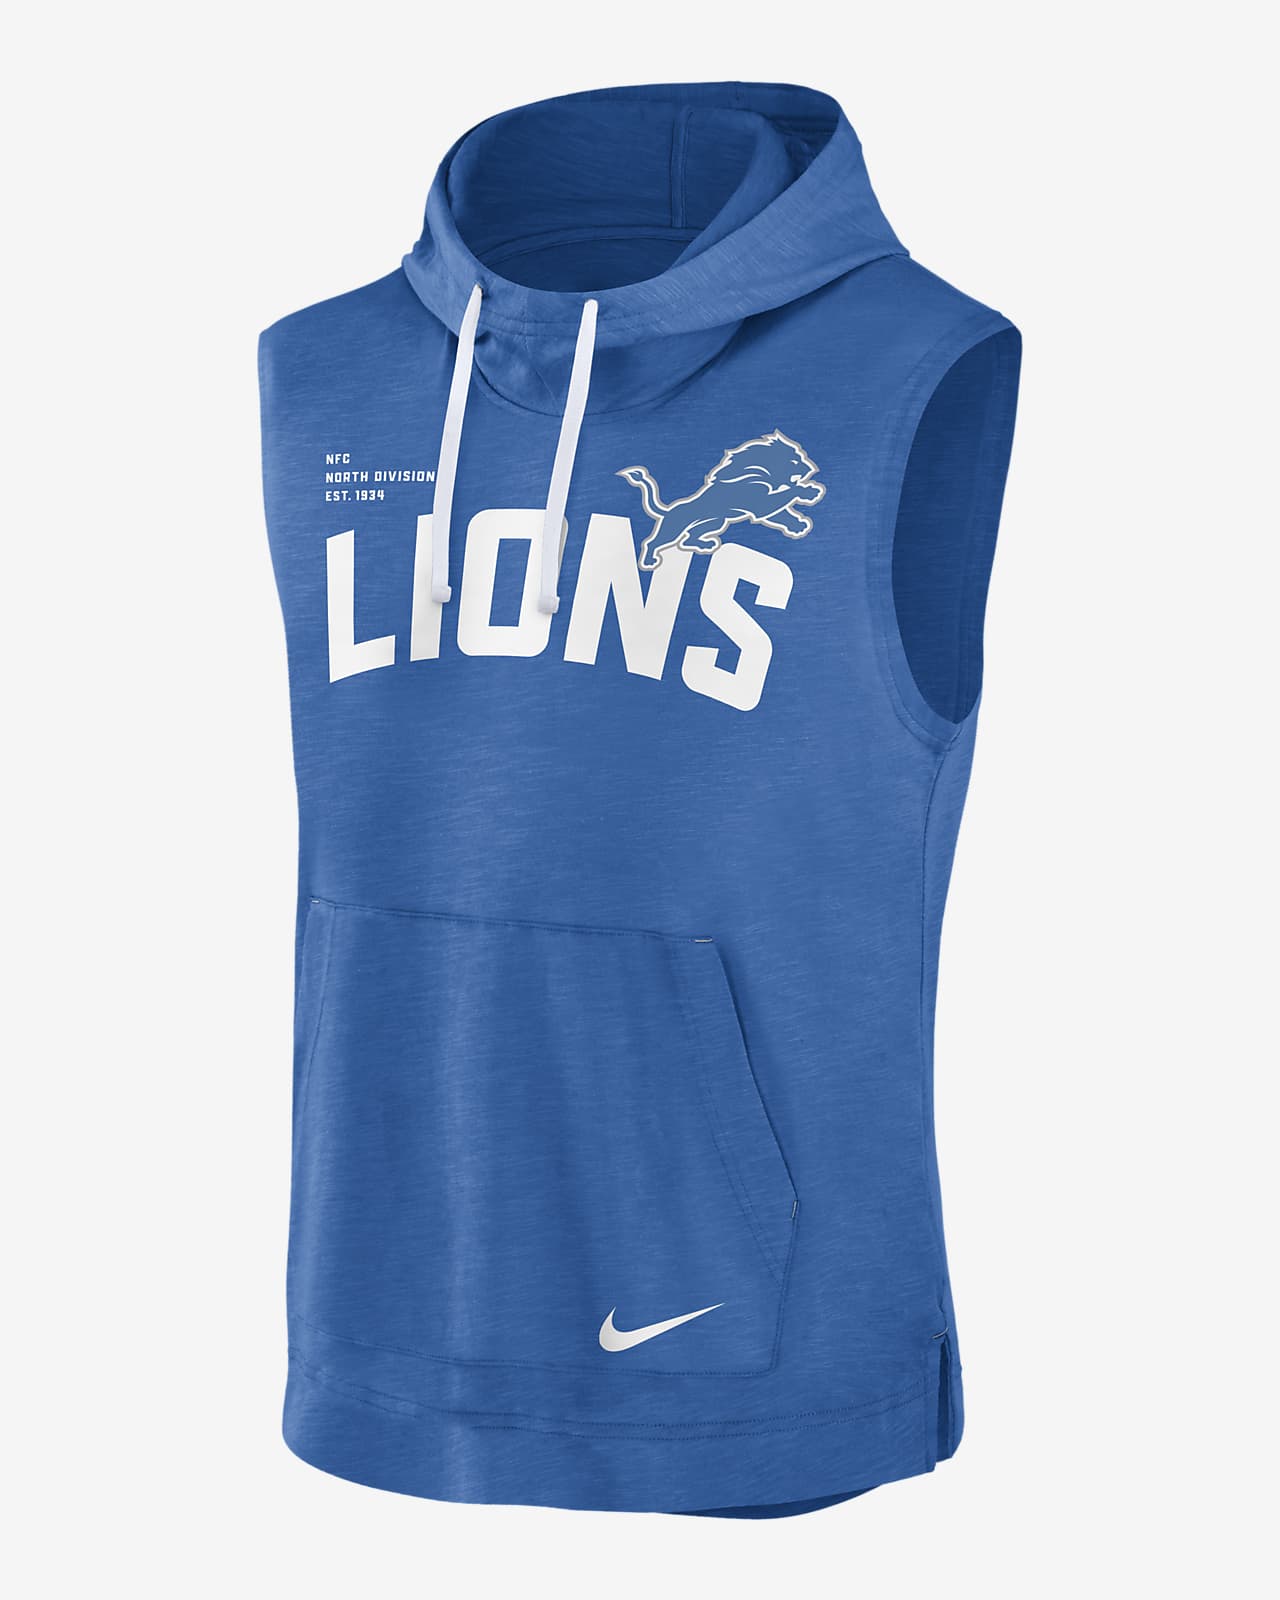 detroit lions sweater